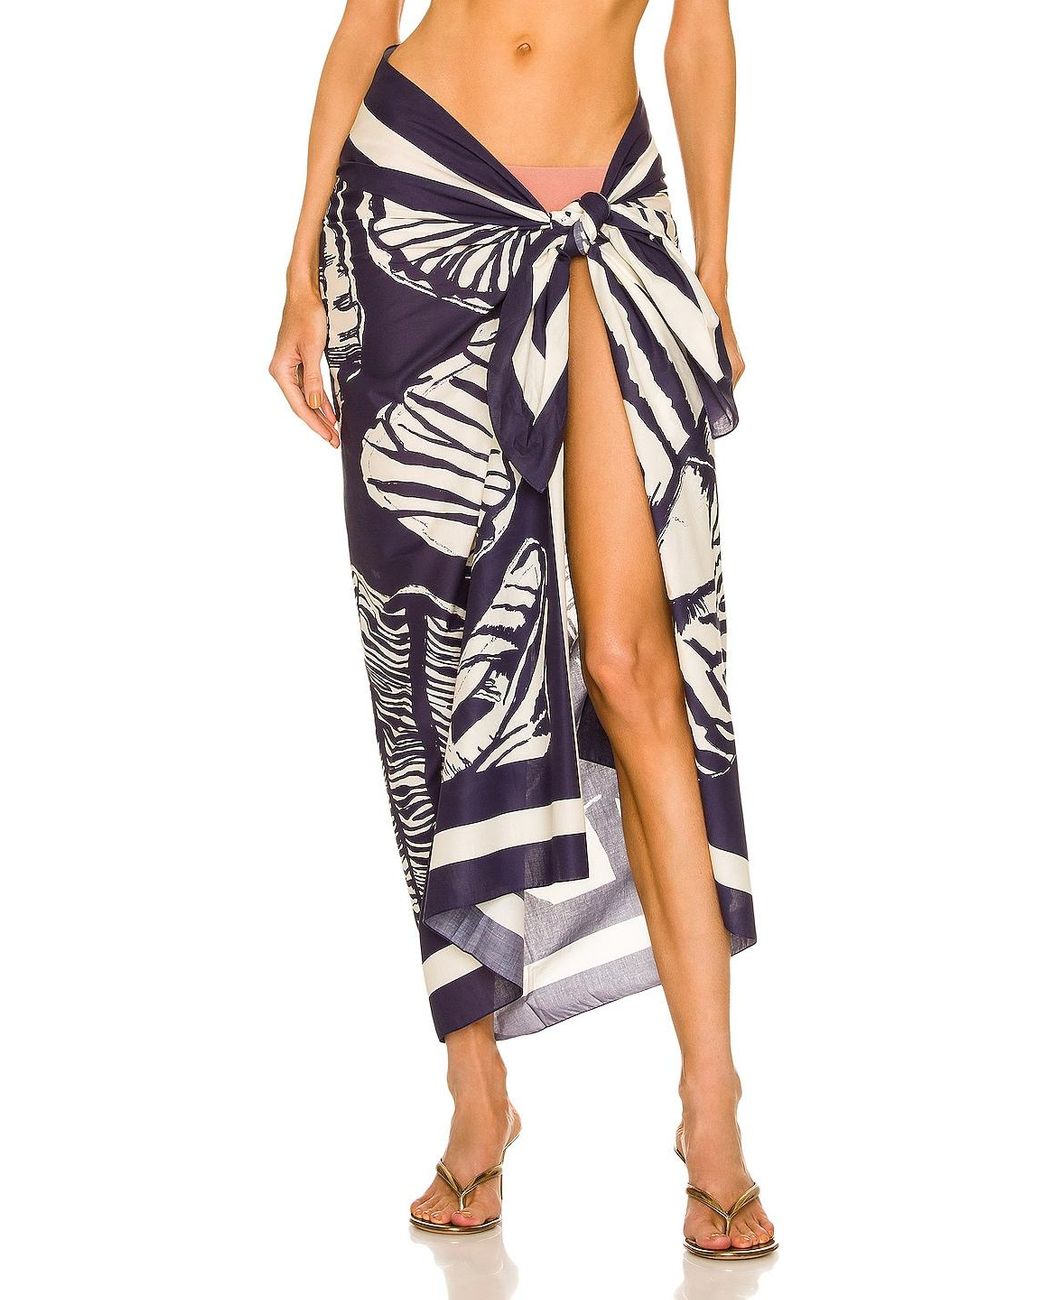 Femme Vêtements Articles de plage et maillots de bain Paréos Sarong en voile de coton biologique La Mer Coton Johanna Ortiz 